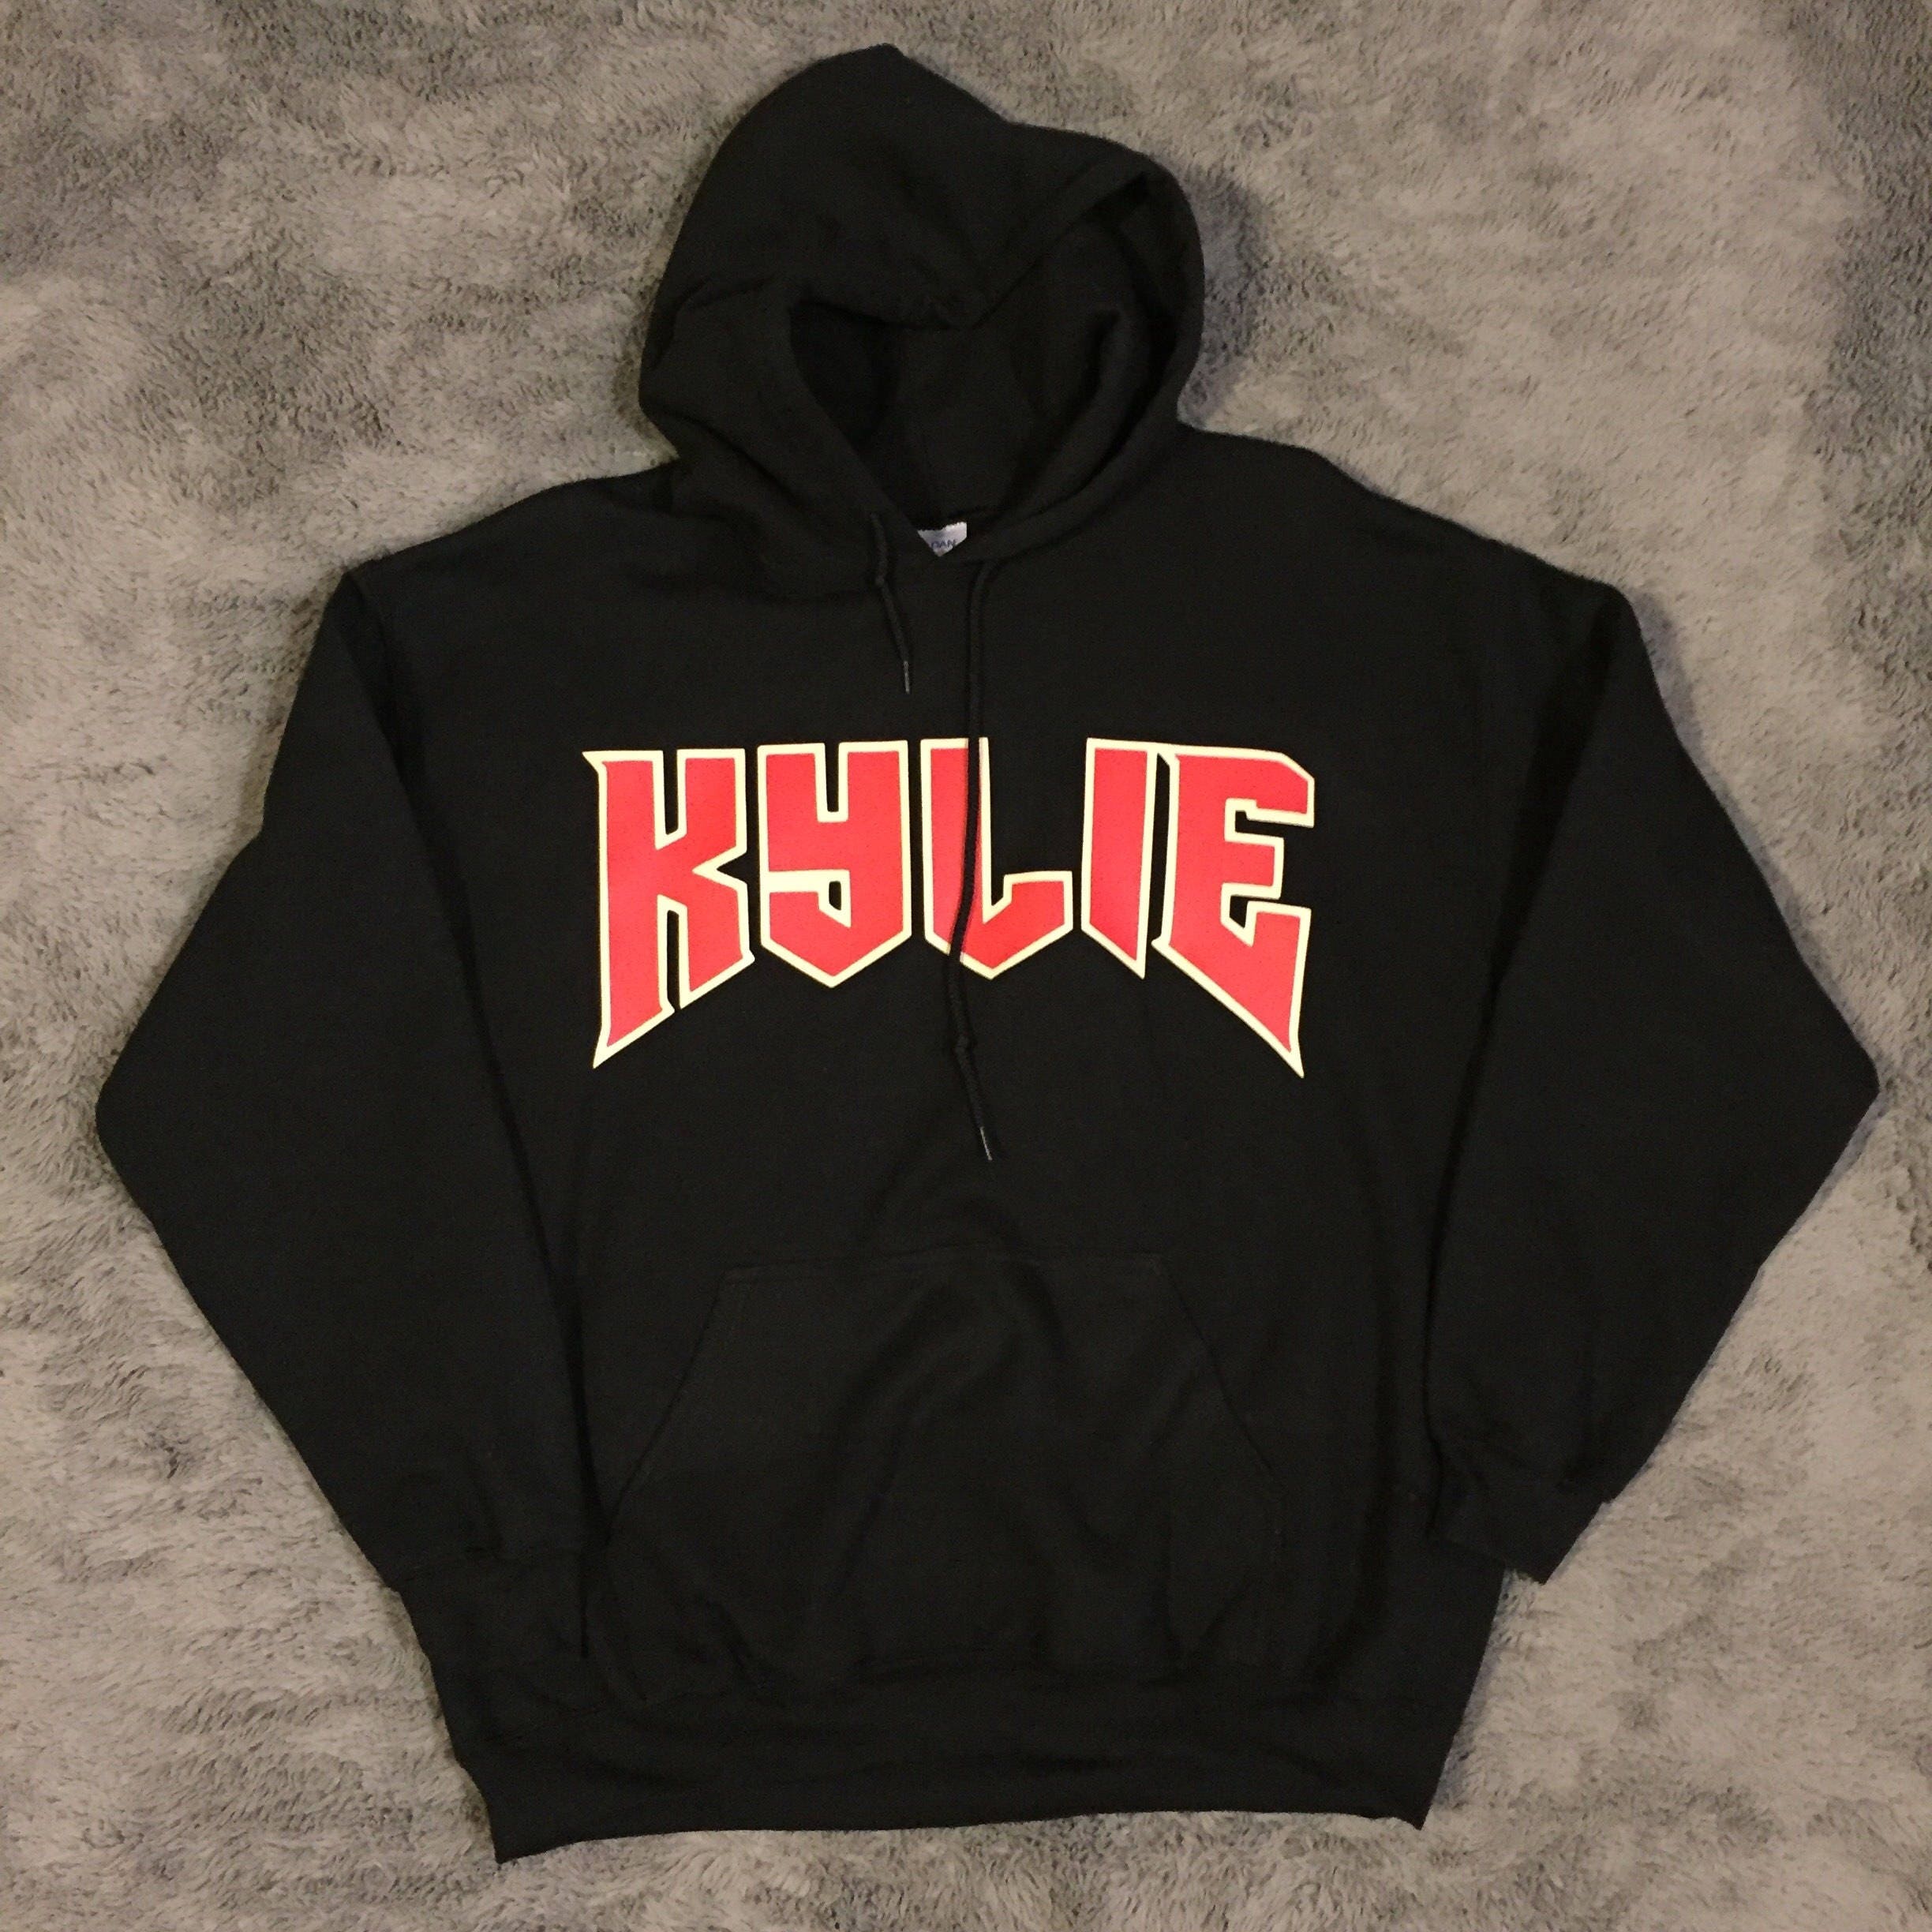 Kylie Jenner KYLIE LOGO Merch hoodie Black